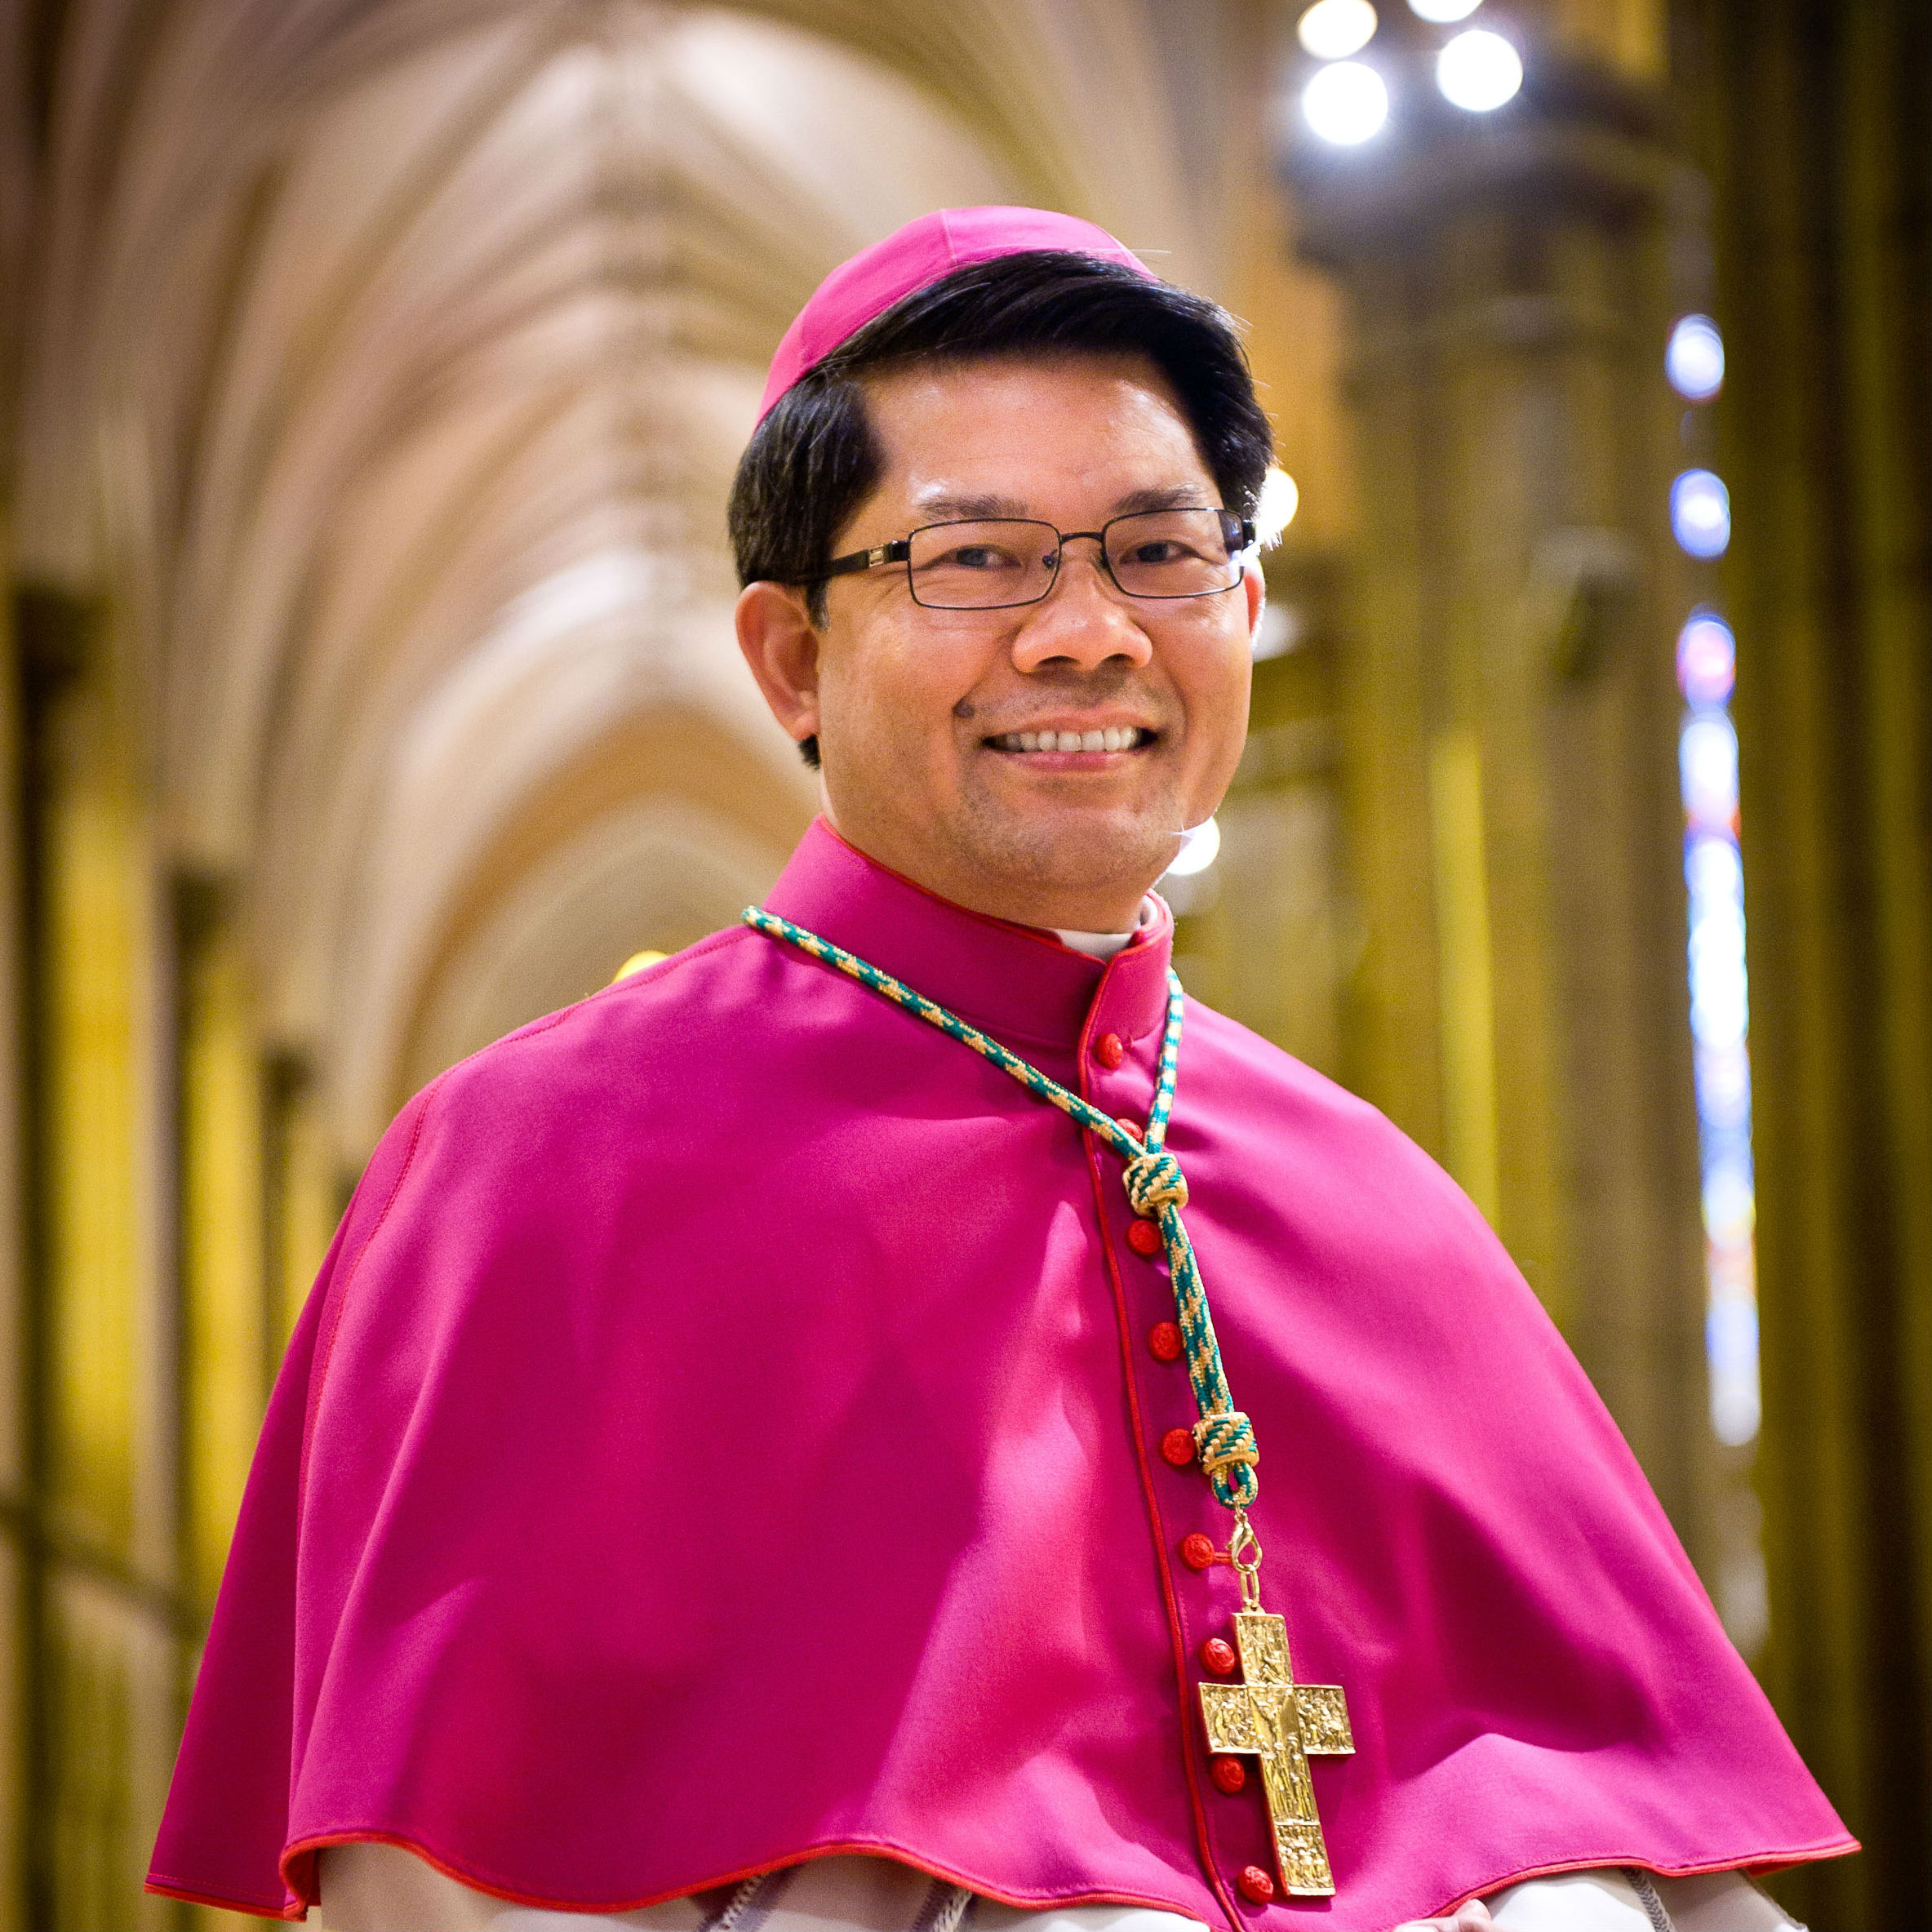 Separate and elitist priesthood model 'drawing its last breaths', says Australian bishop